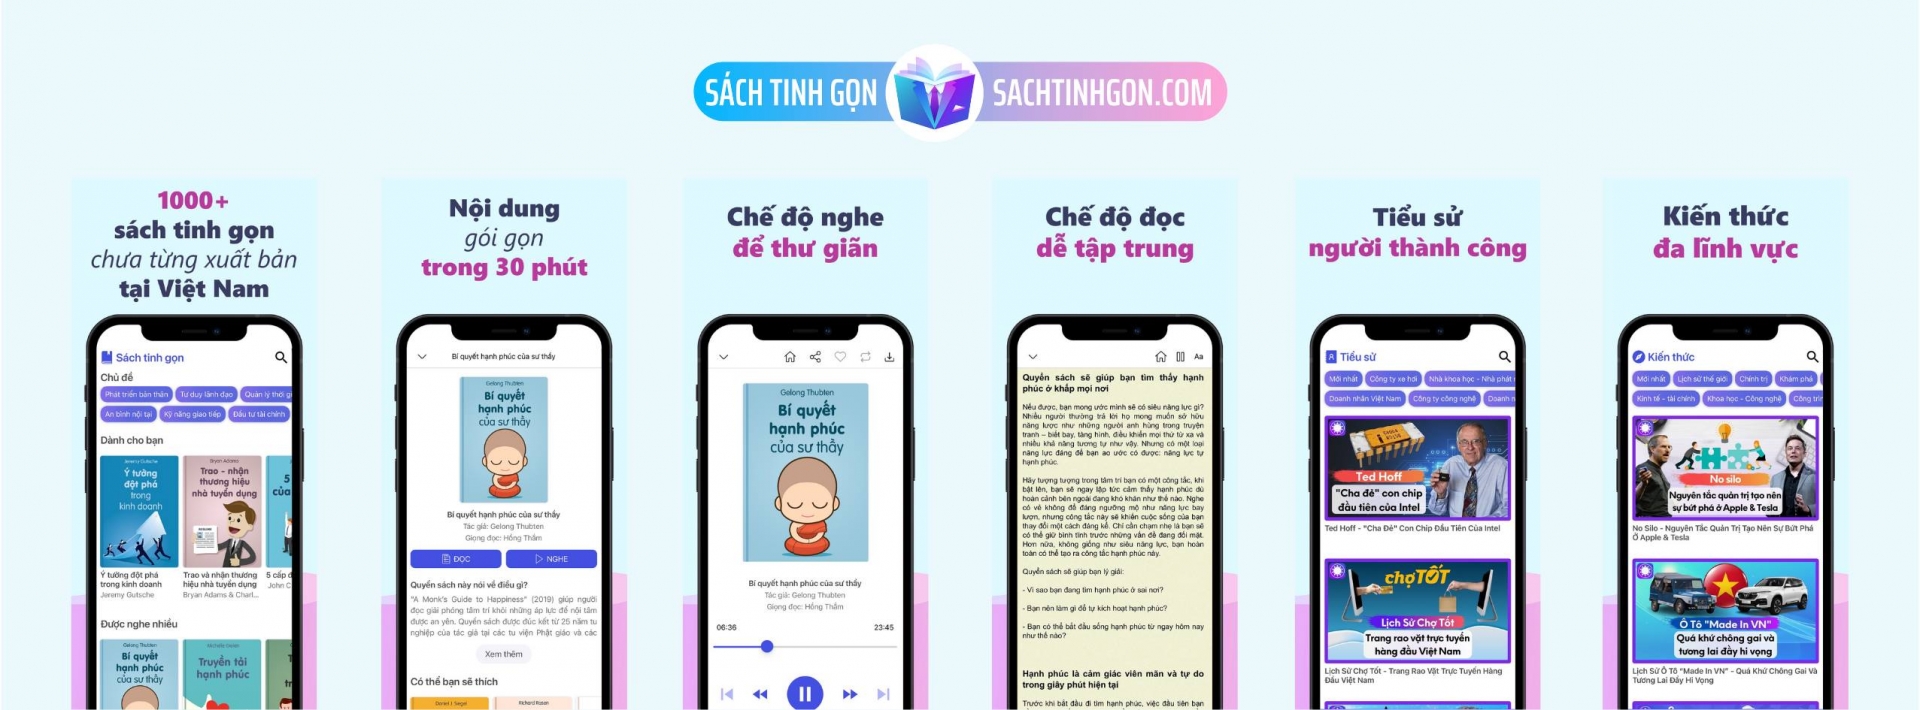 Ứng dụng Sách tinh gọn chính thức ra mắt: Trải nghiệm văn hóa đọc thuận tiện nhất tại Việt Nam 1